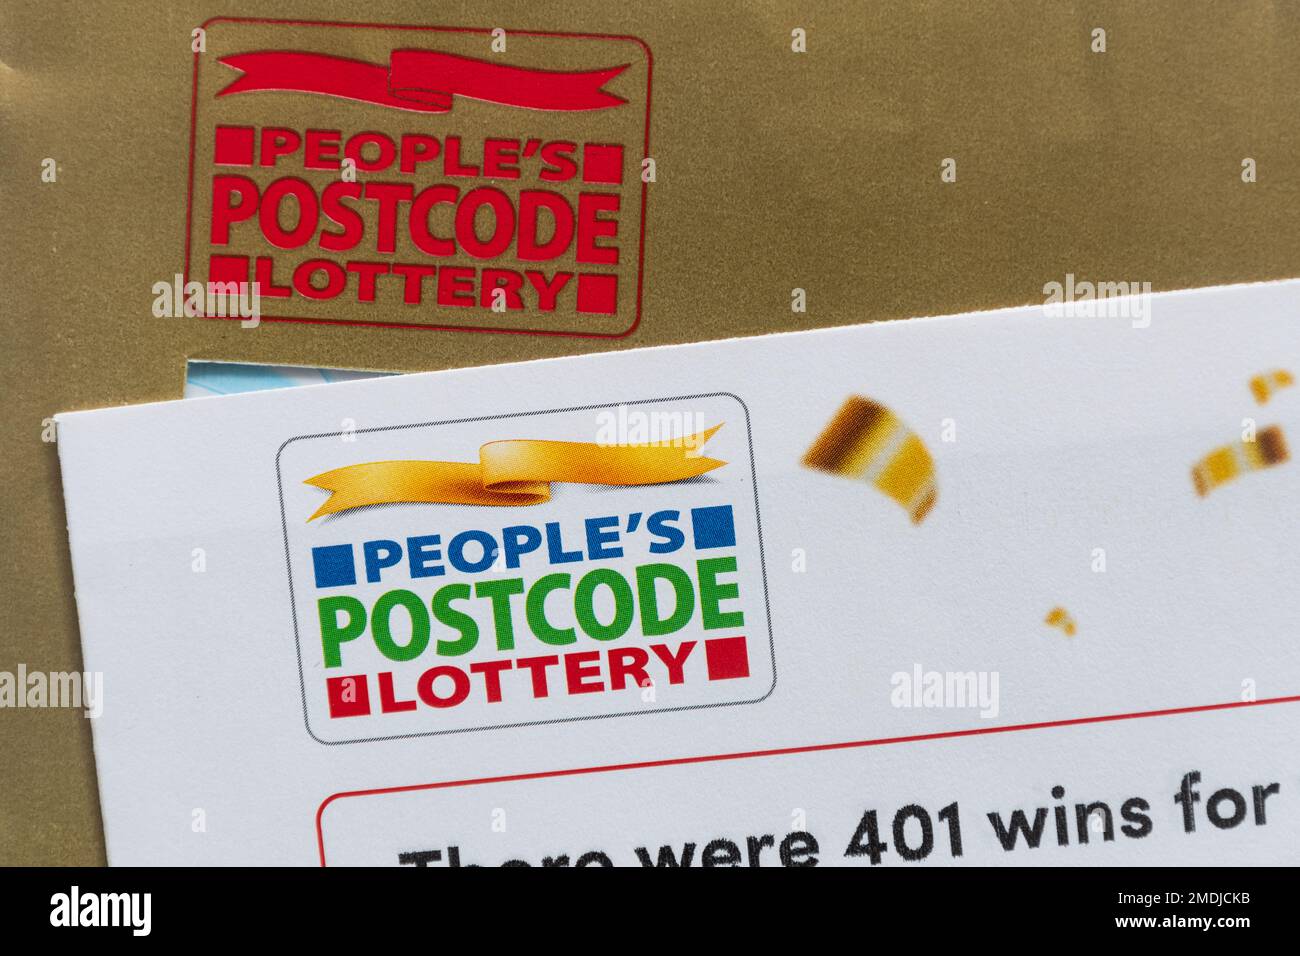 Lettera e busta della lotteria del codice postale della gente, posta della roba di rifiuto che fa pubblicità alla lotteria, Inghilterra, Regno Unito Foto Stock